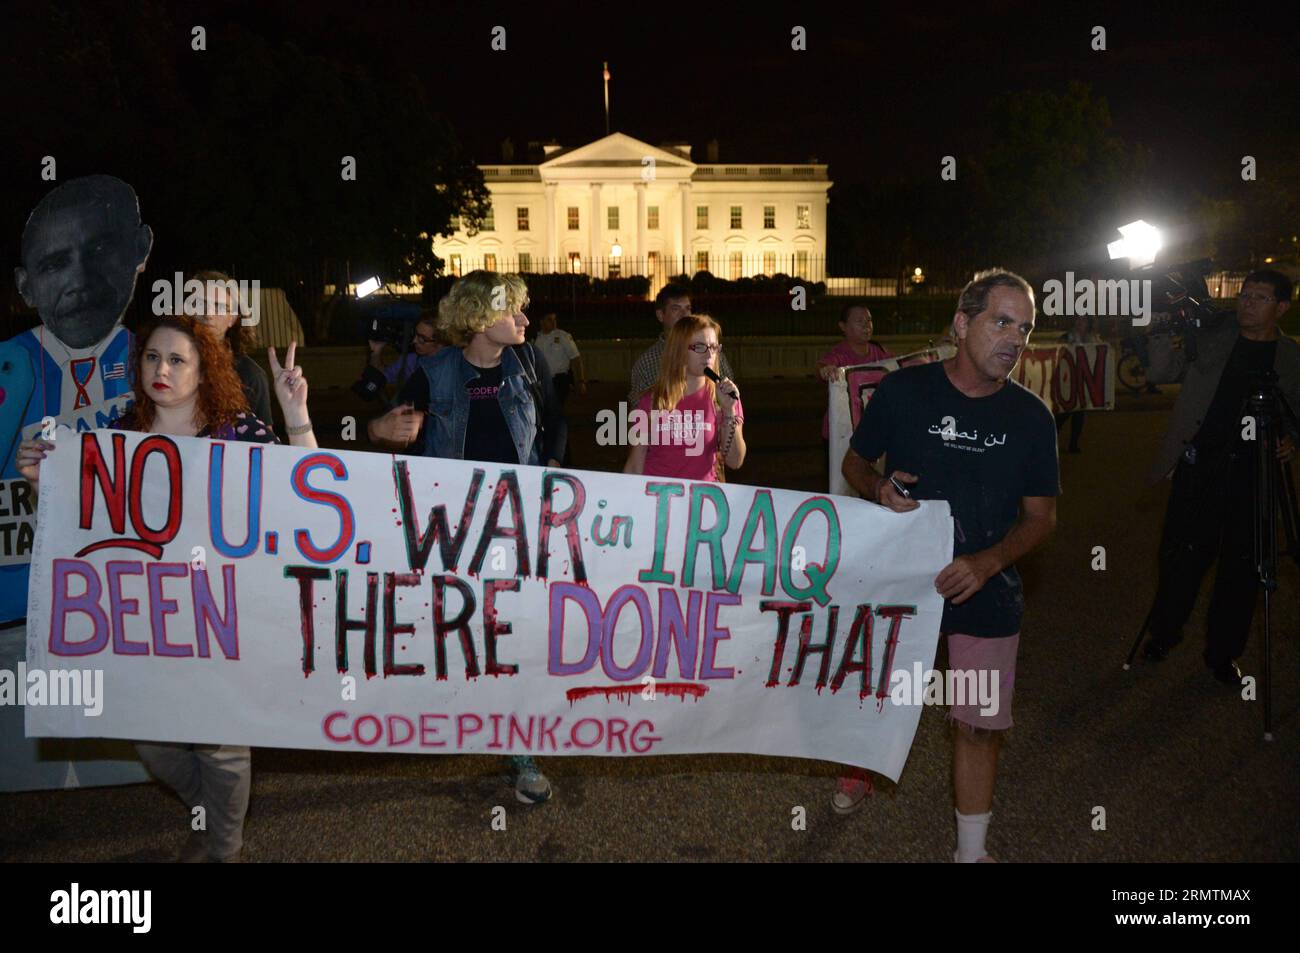 (140911) -- WASHINGTON, -- die Menschen nehmen an einer Demonstration Teil, die gegen militärische Aktionen im Irak und in Syrien protestiert, vor dem Weißen Haus in Washington, 10. September 2014. ) US-WASHINGTON-PROTEST YinxBogu PUBLICATIONxNOTxINxCHN Washington Prominente nehmen an einer Demonstration gegen militärische Aktionen im Irak und Syrien vor dem Weißen Haus in Washington Teil. September 10 2014 US-Washington Protest YinxBogu PUBLICATIONxNOTxINxCHN Stockfoto